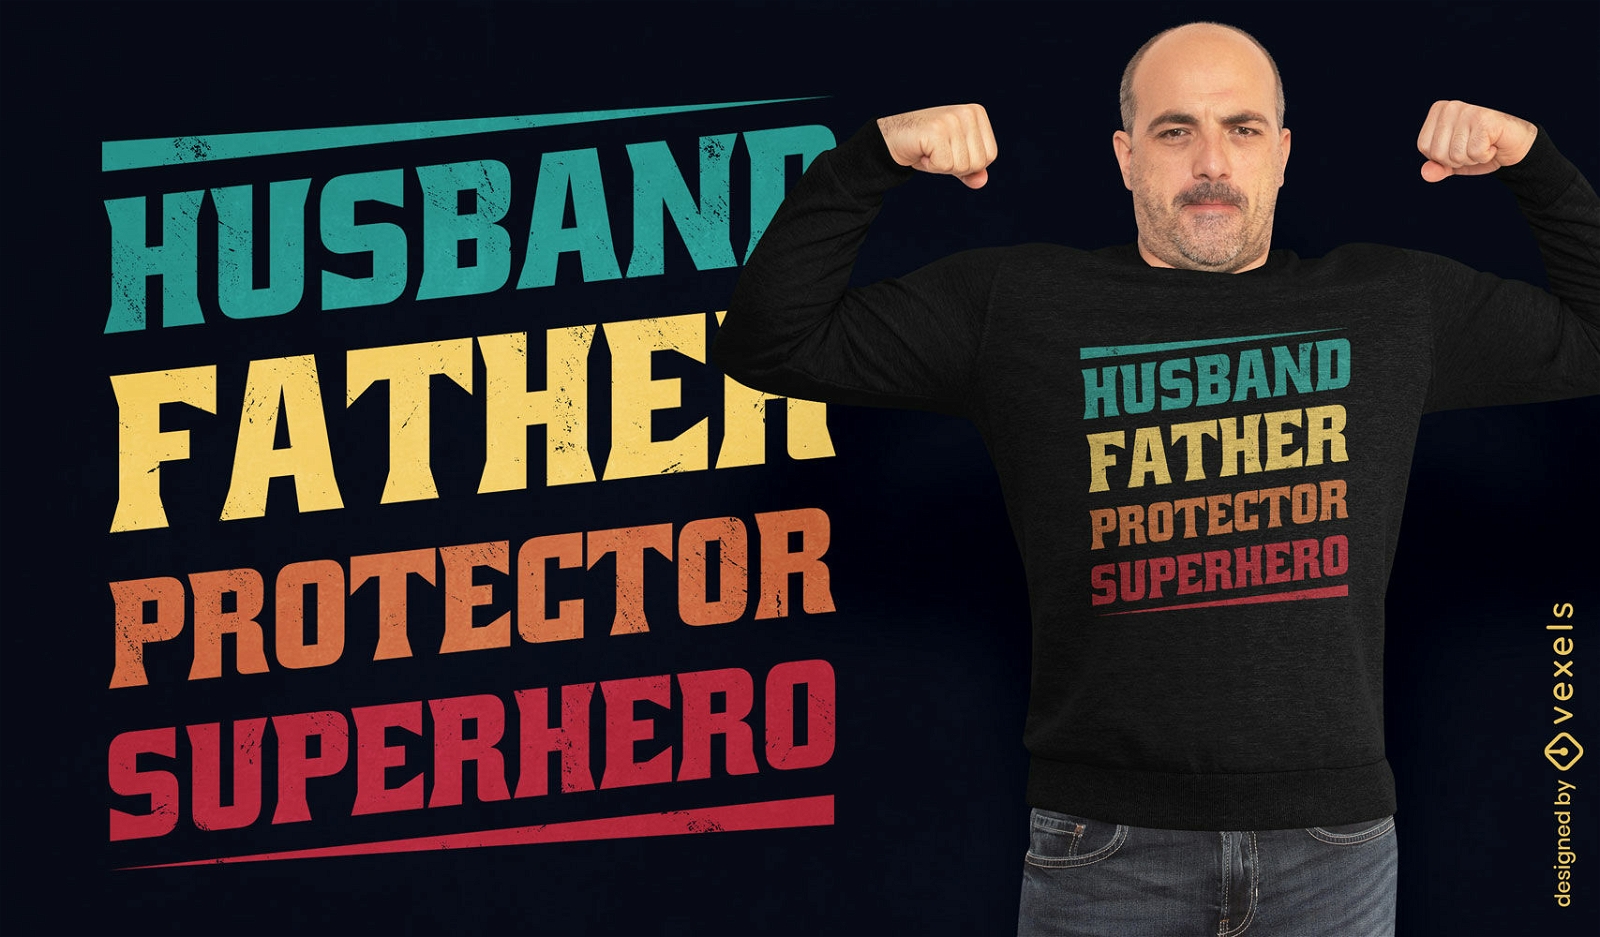 Ehemann und Vater zitieren T-Shirt-Design